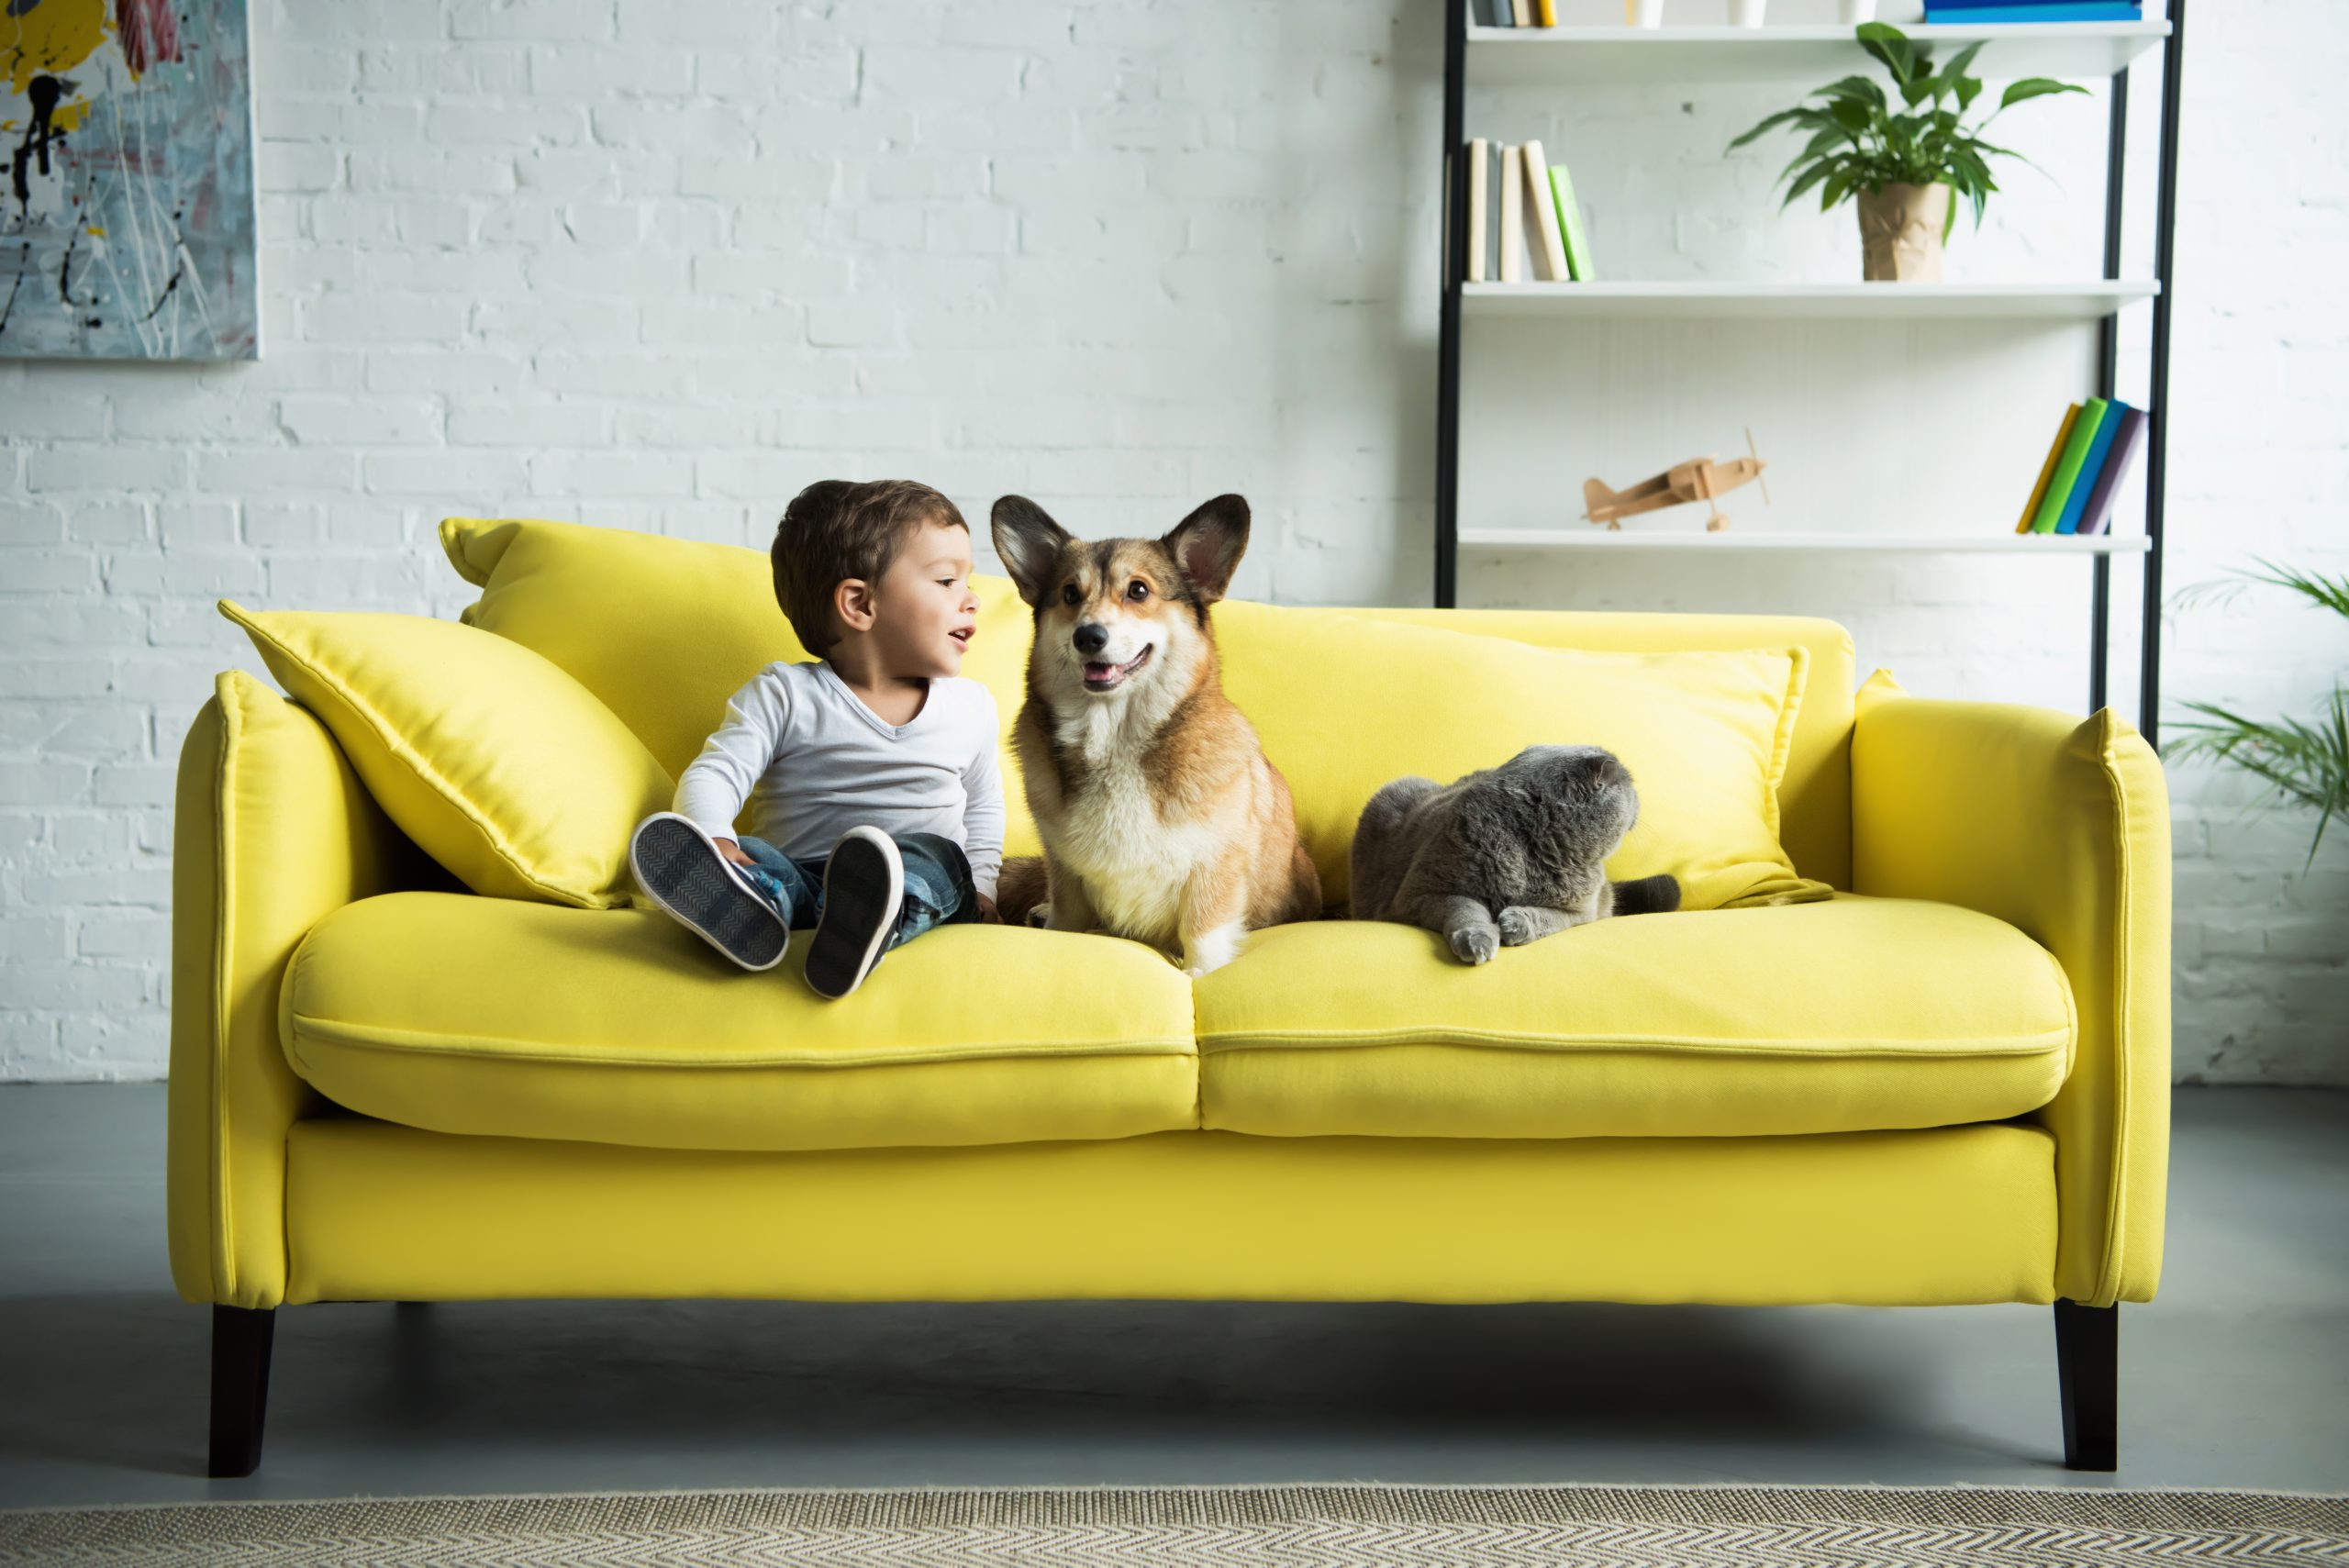 Ein Sofa nach Maß bietet viele Vorteile. Foto LightFieldStudios via Envato